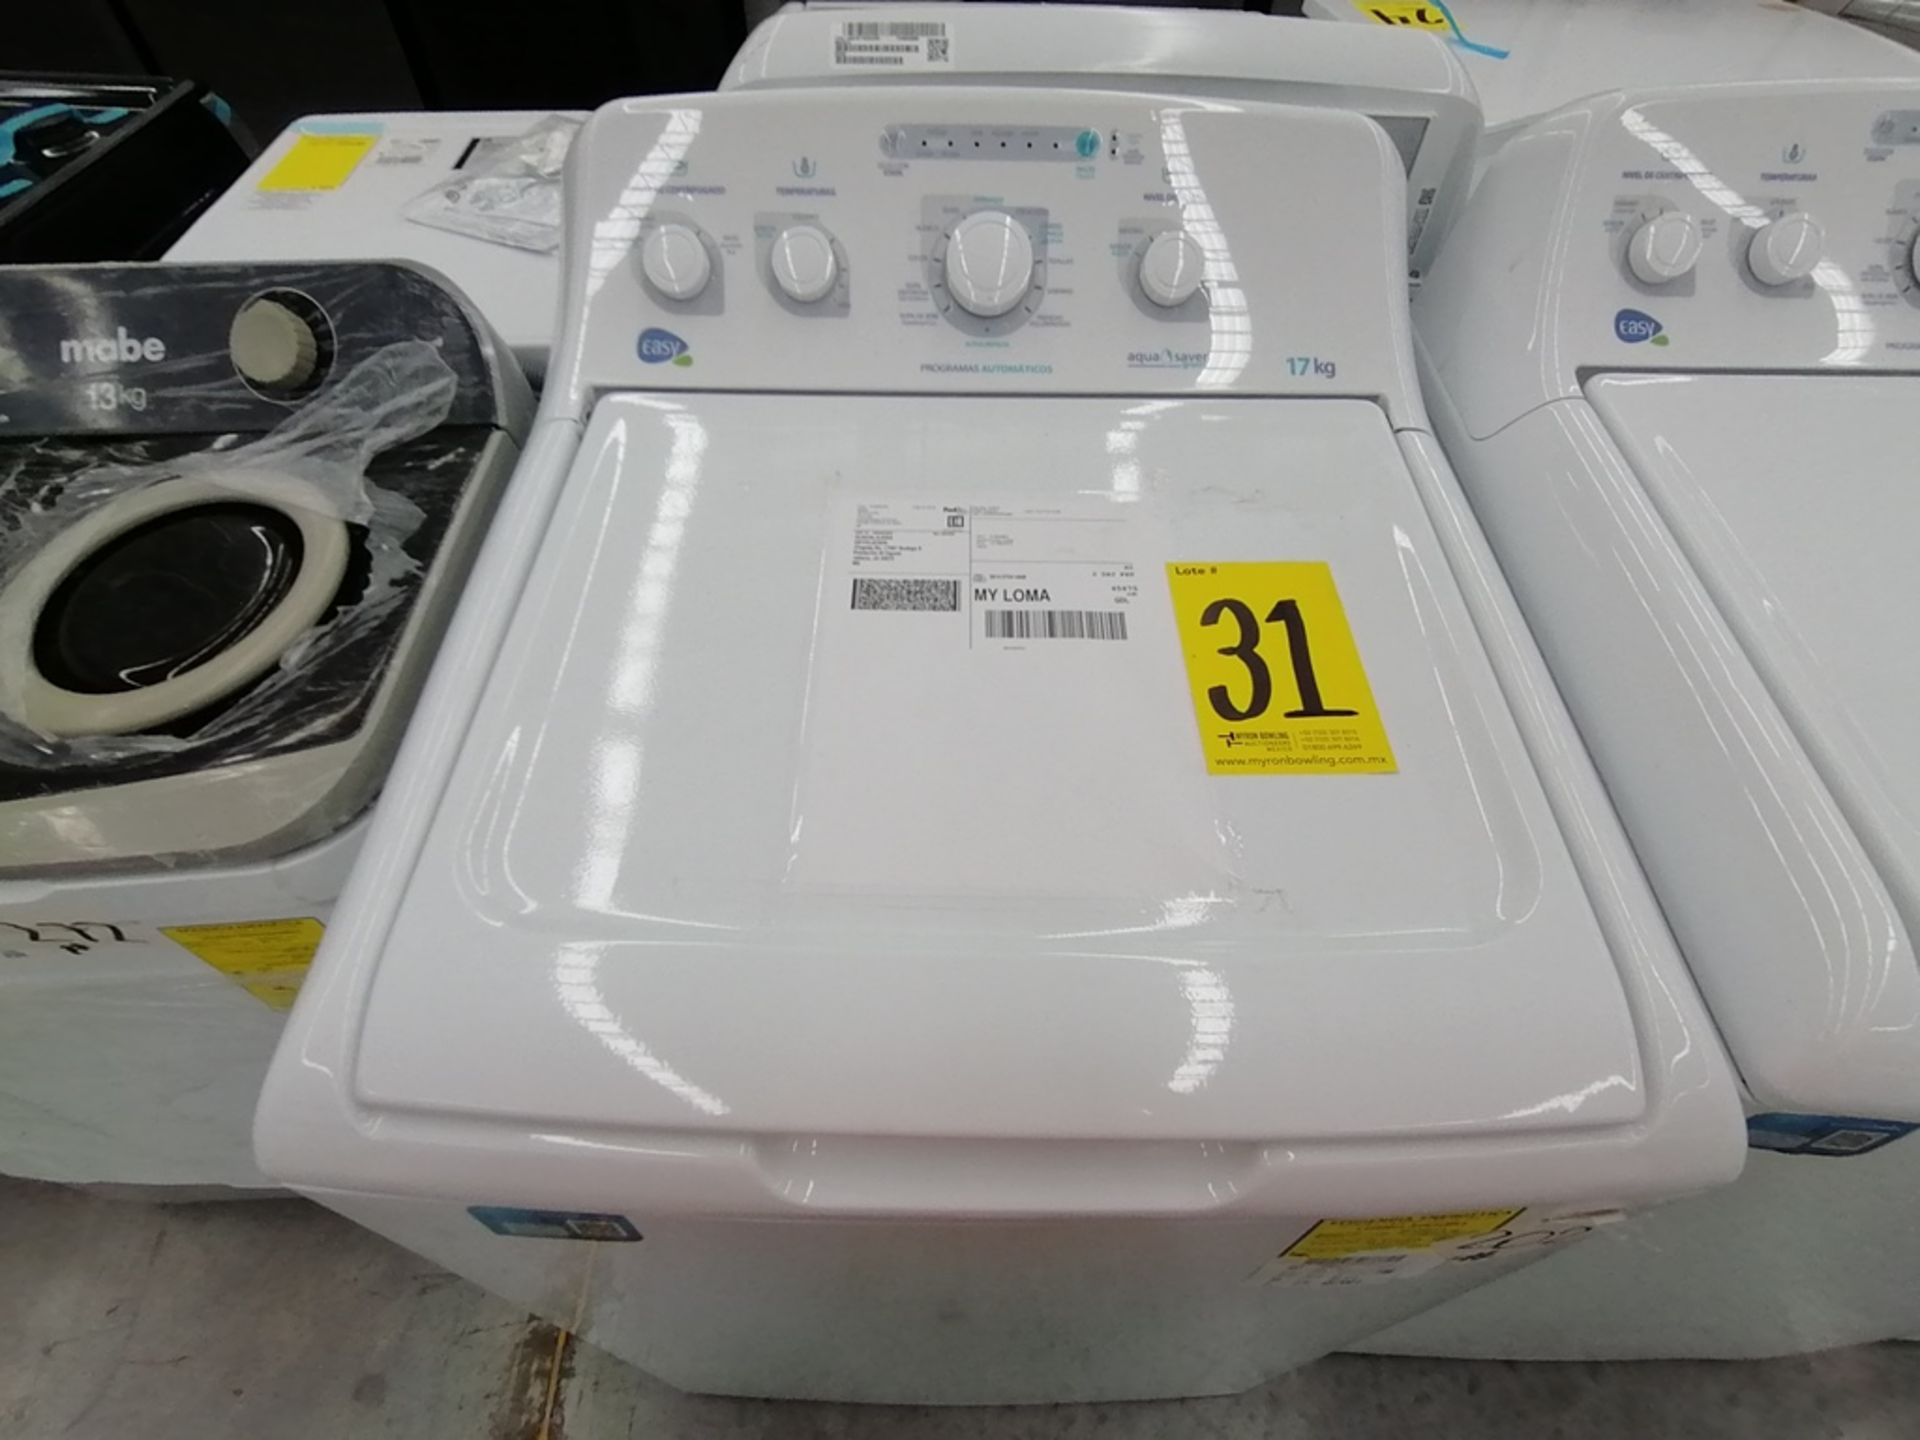 Lote de 3 lavadoras contiene: 1 Lavadora de 17KG, Marca Easy, Modelo LEA77114CBAB03, Serie 2105S522 - Image 12 of 30